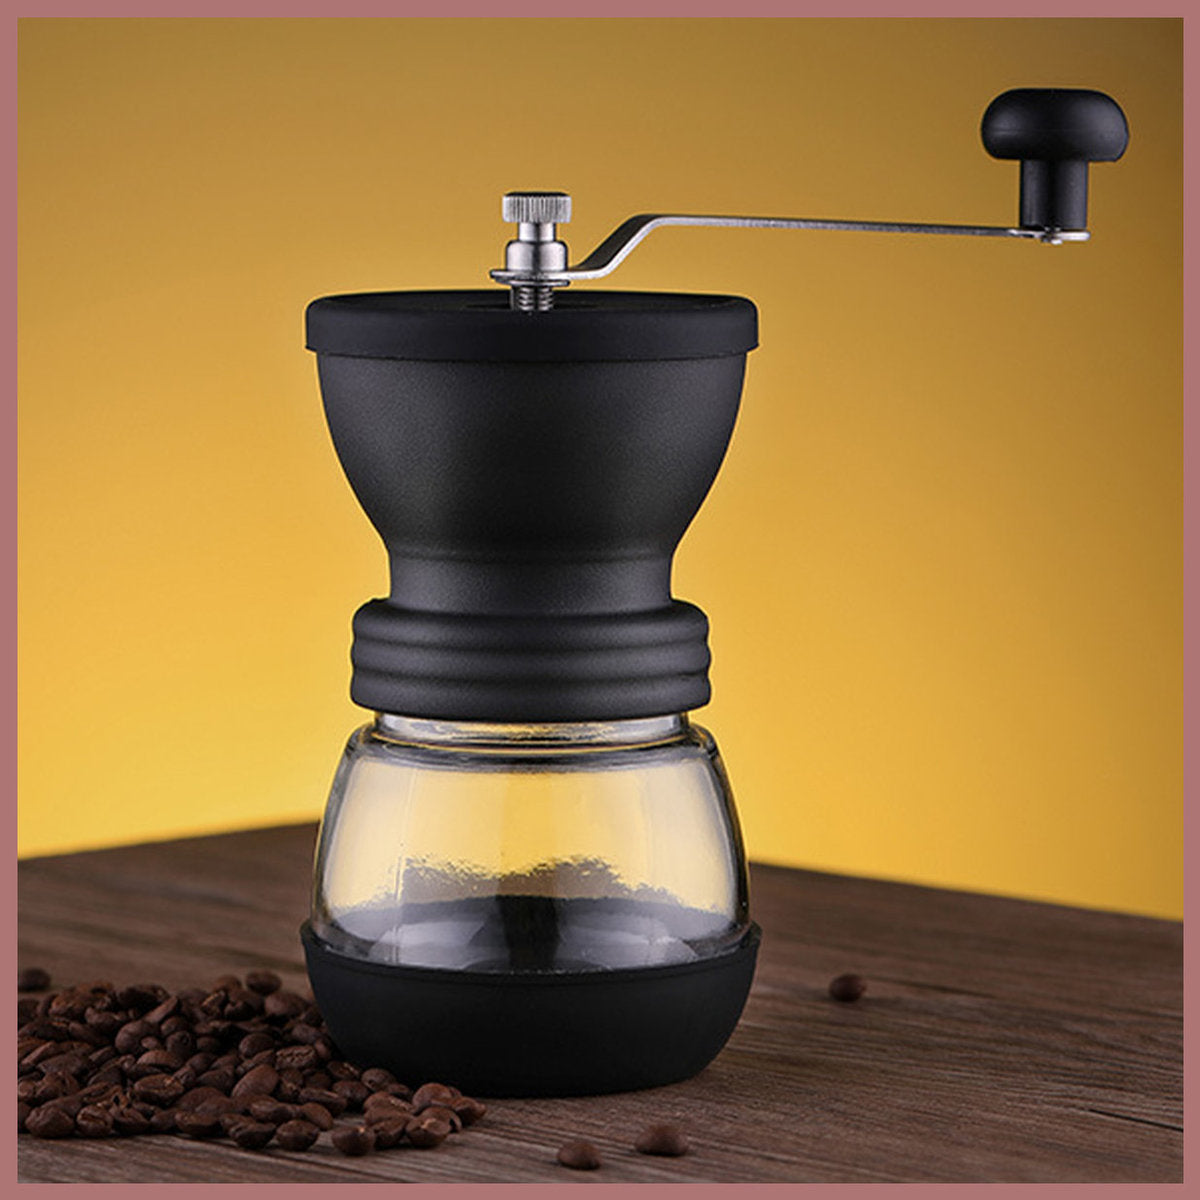 便攜式手磨咖啡豆研磨機 咖啡粉 手動磨咖啡器連玻璃儲存瓶 磨豆機